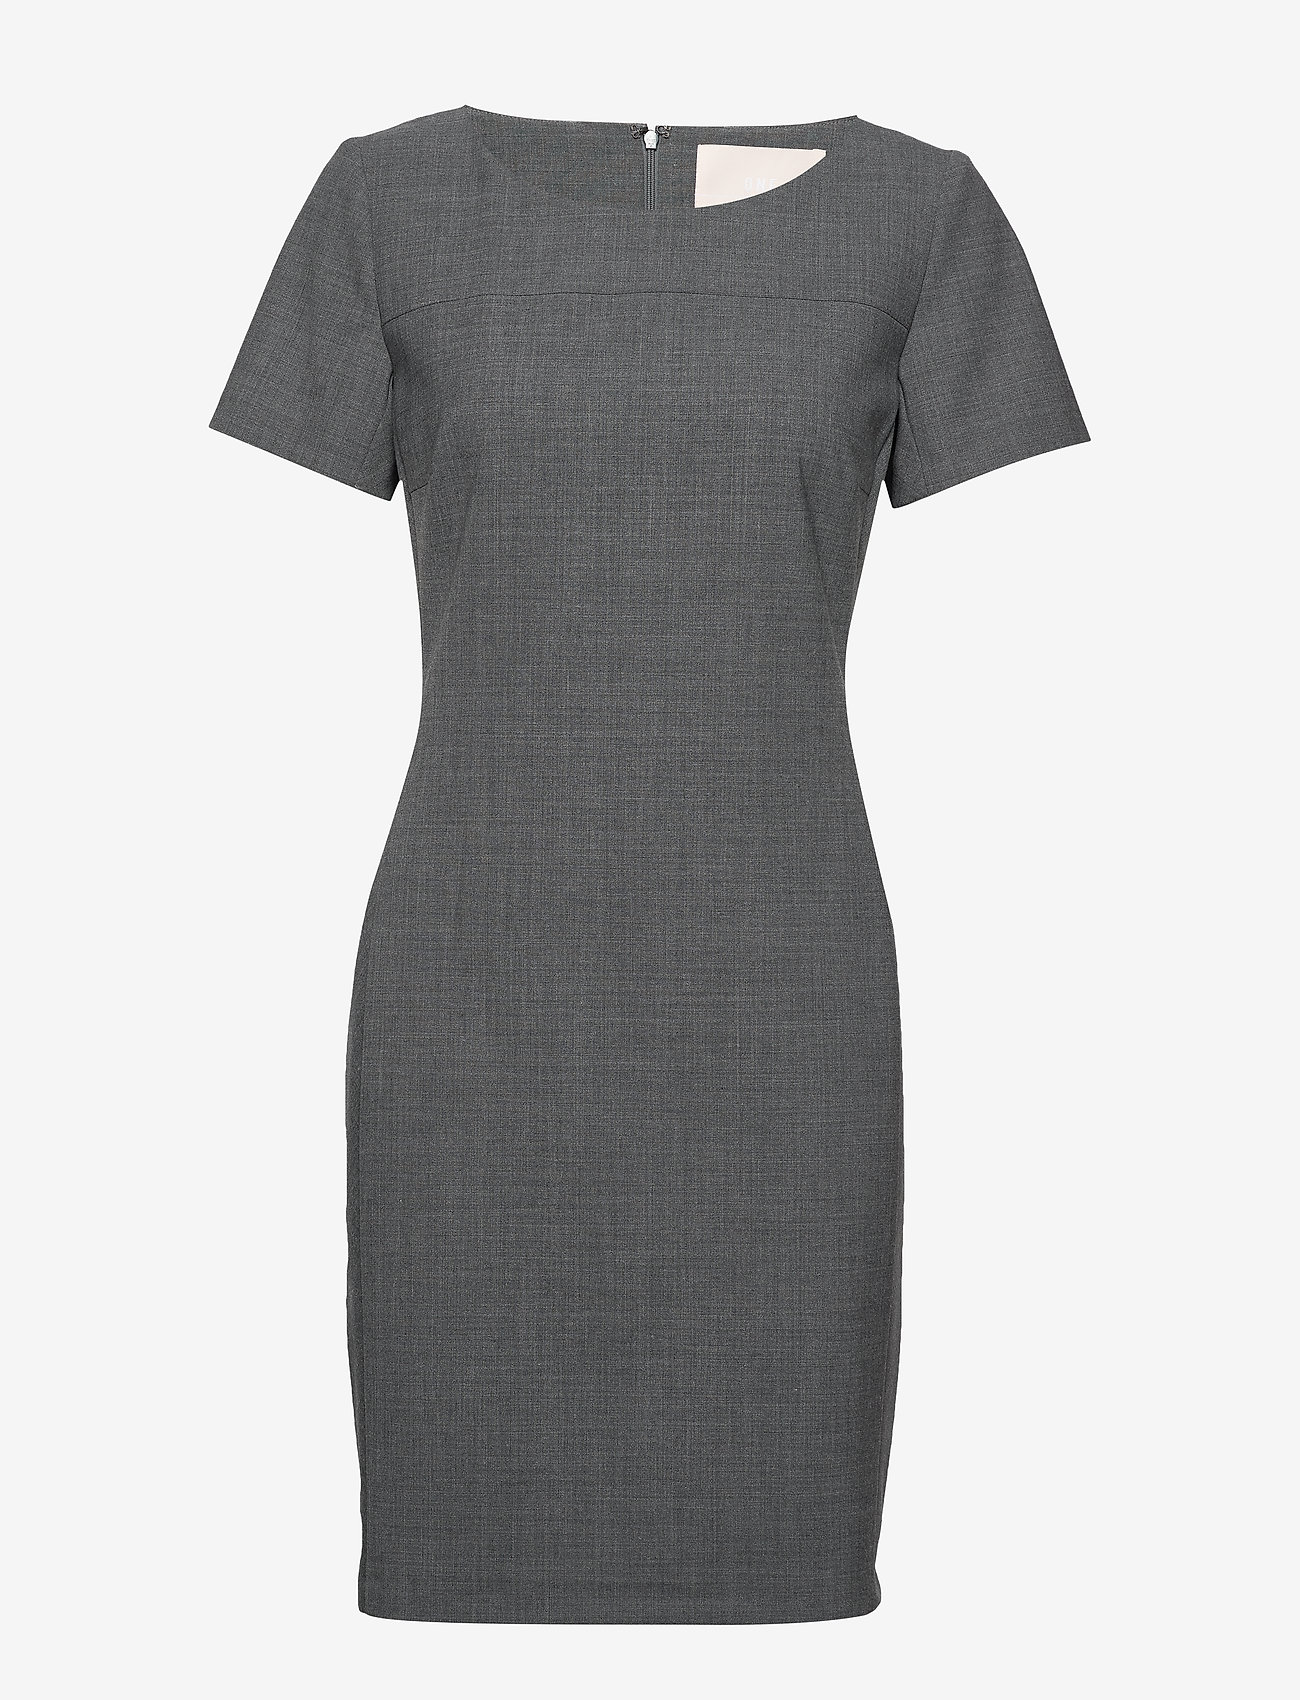 Karen By Simonsen - SydneyKB SS Dress - tettsittende kjoler - grey melange - 0